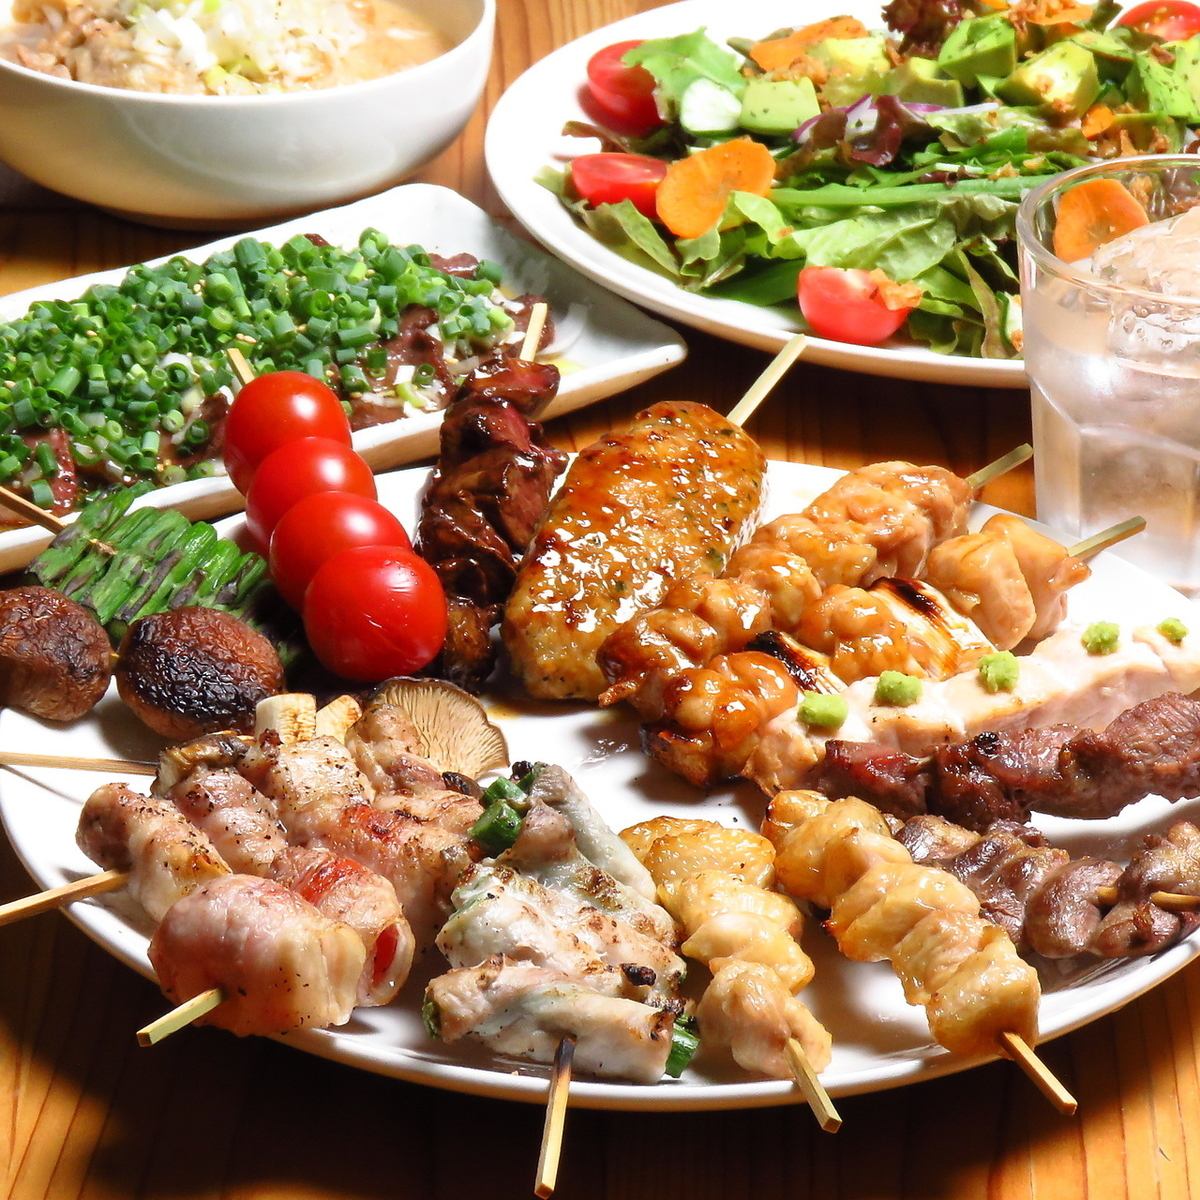 我们的菜单上有各种各样的串烧，包括鸡肉串、猪肉串、牛舌串和蔬菜串！